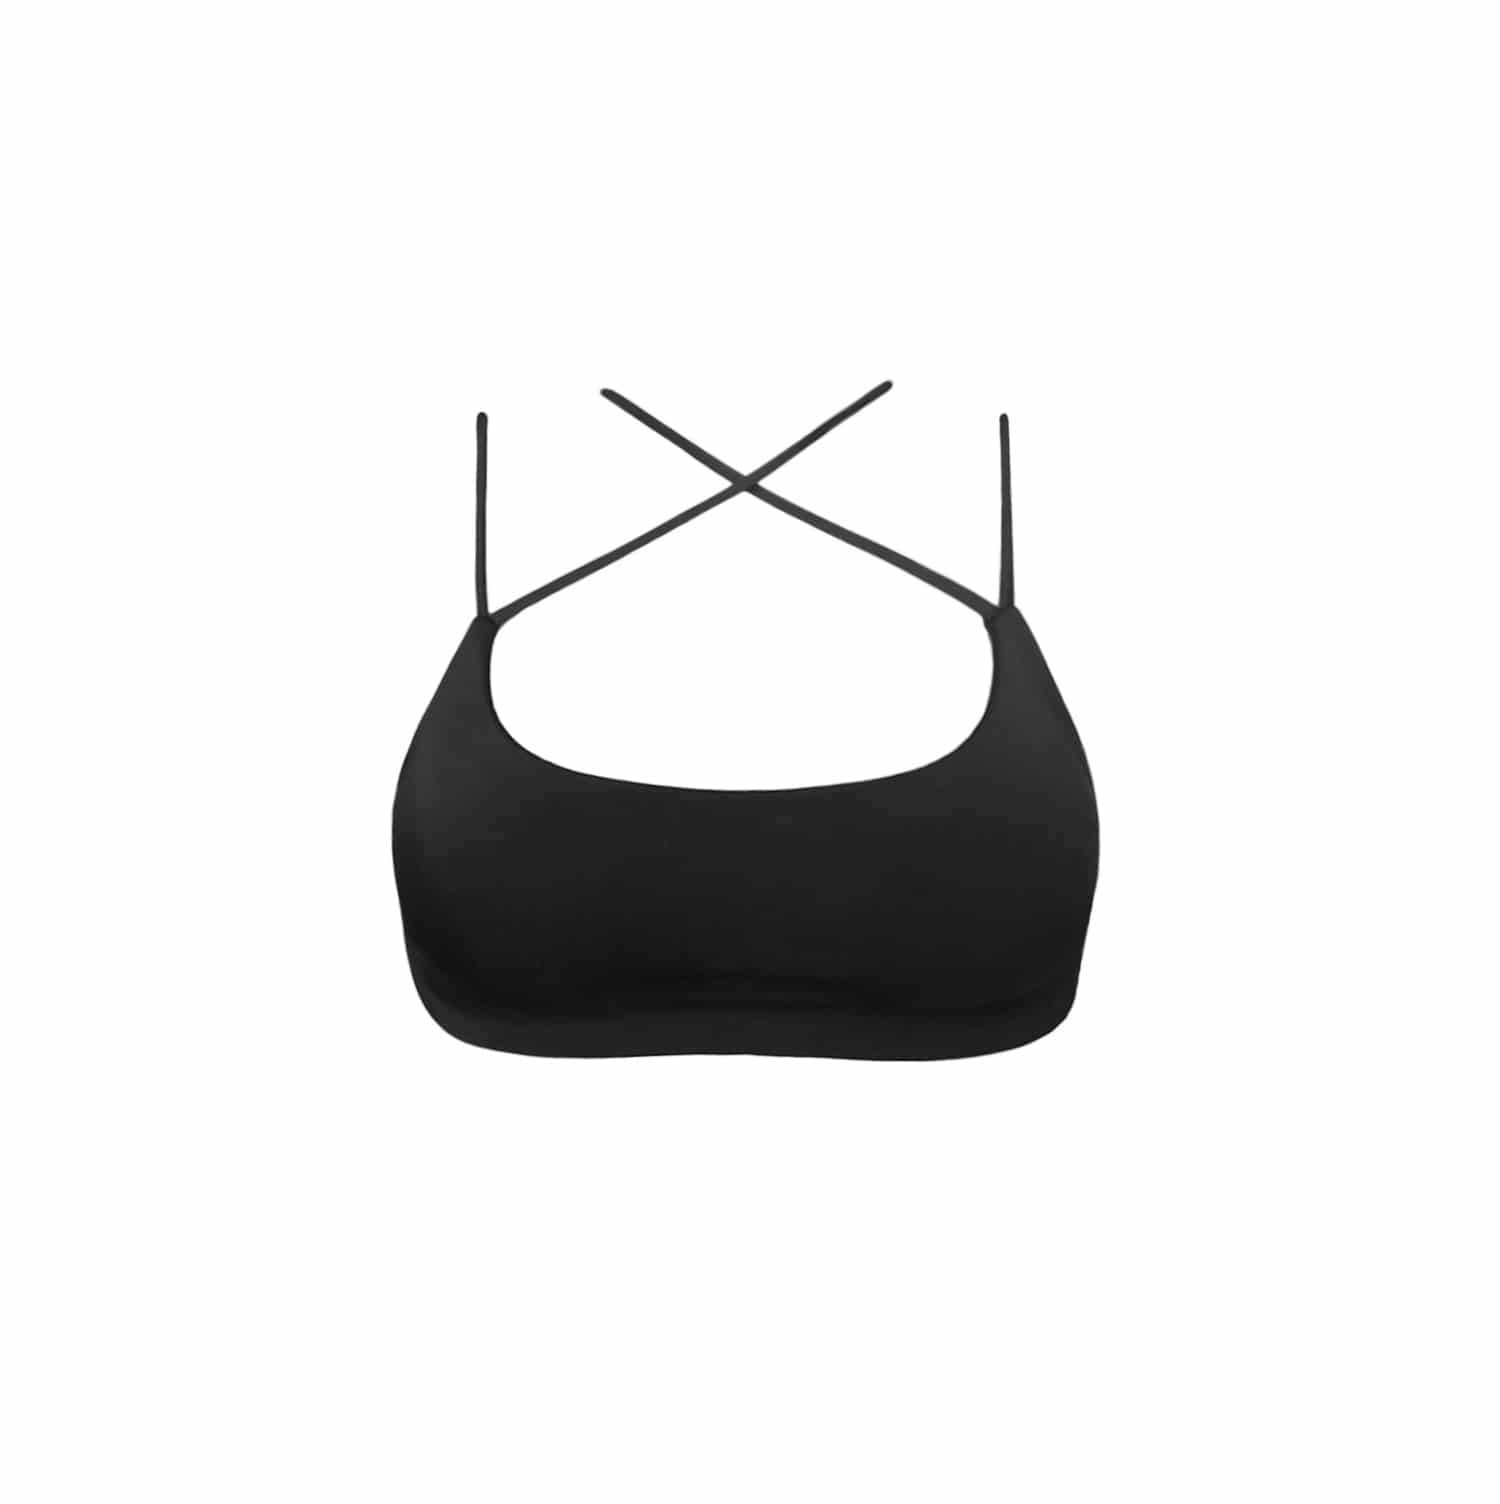 czarny top bikini polska marka polski strój kąpielowy kostium kąpielowy bikini top z wkładkami z miseczkami usztywniany wkładki